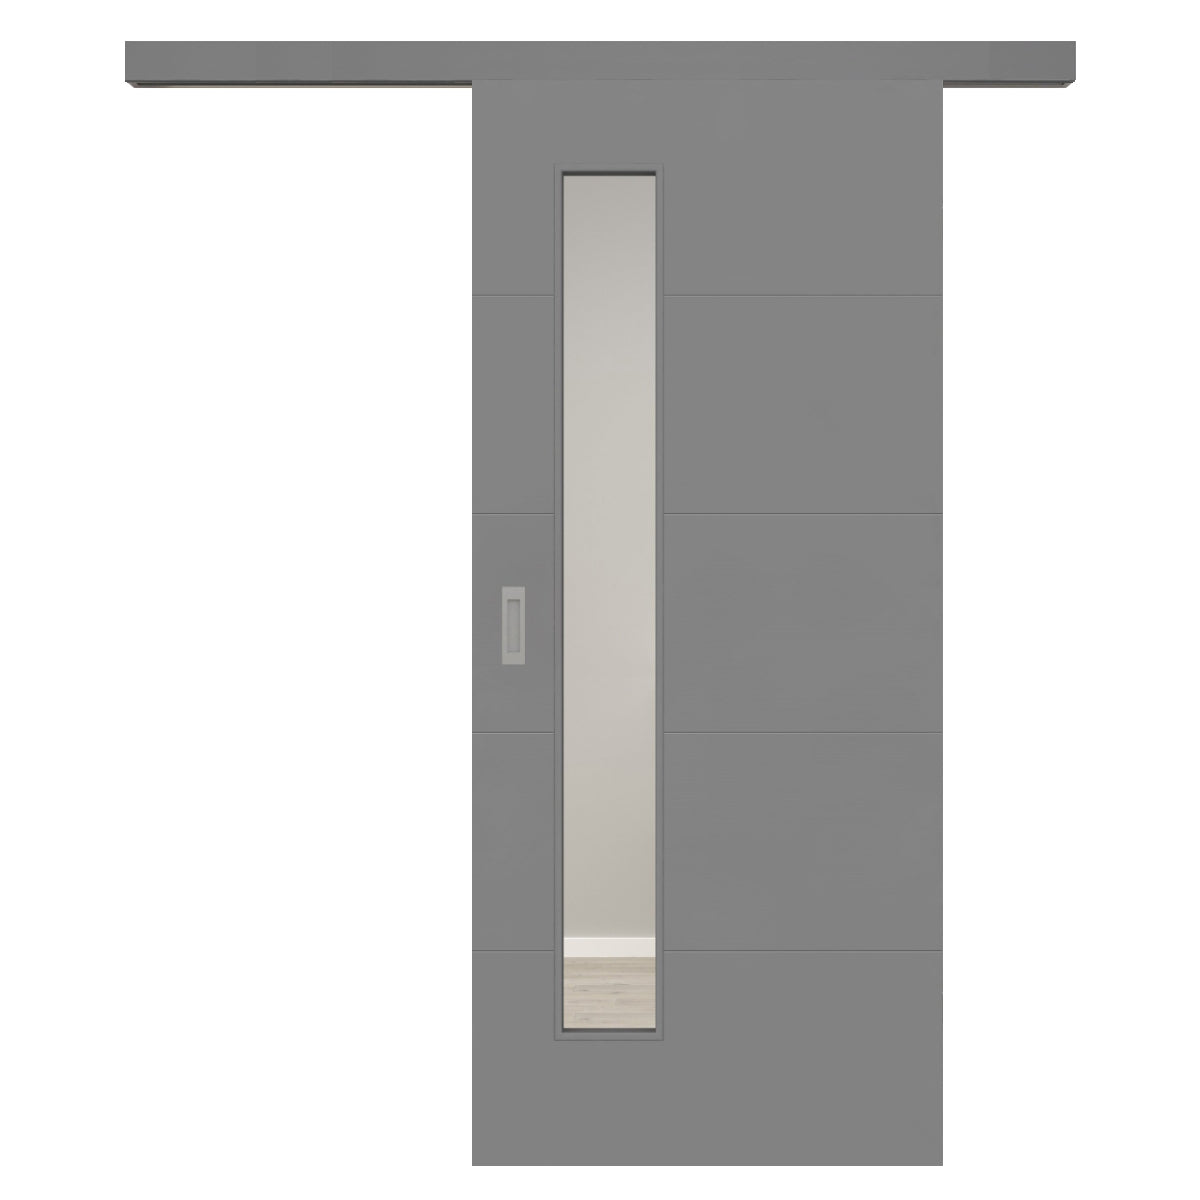 Schiebetür für Set mit grauem Laufkasten mit Lichtausschnitt grau 4 Rillen quer - Modell Designtür Q47LAS